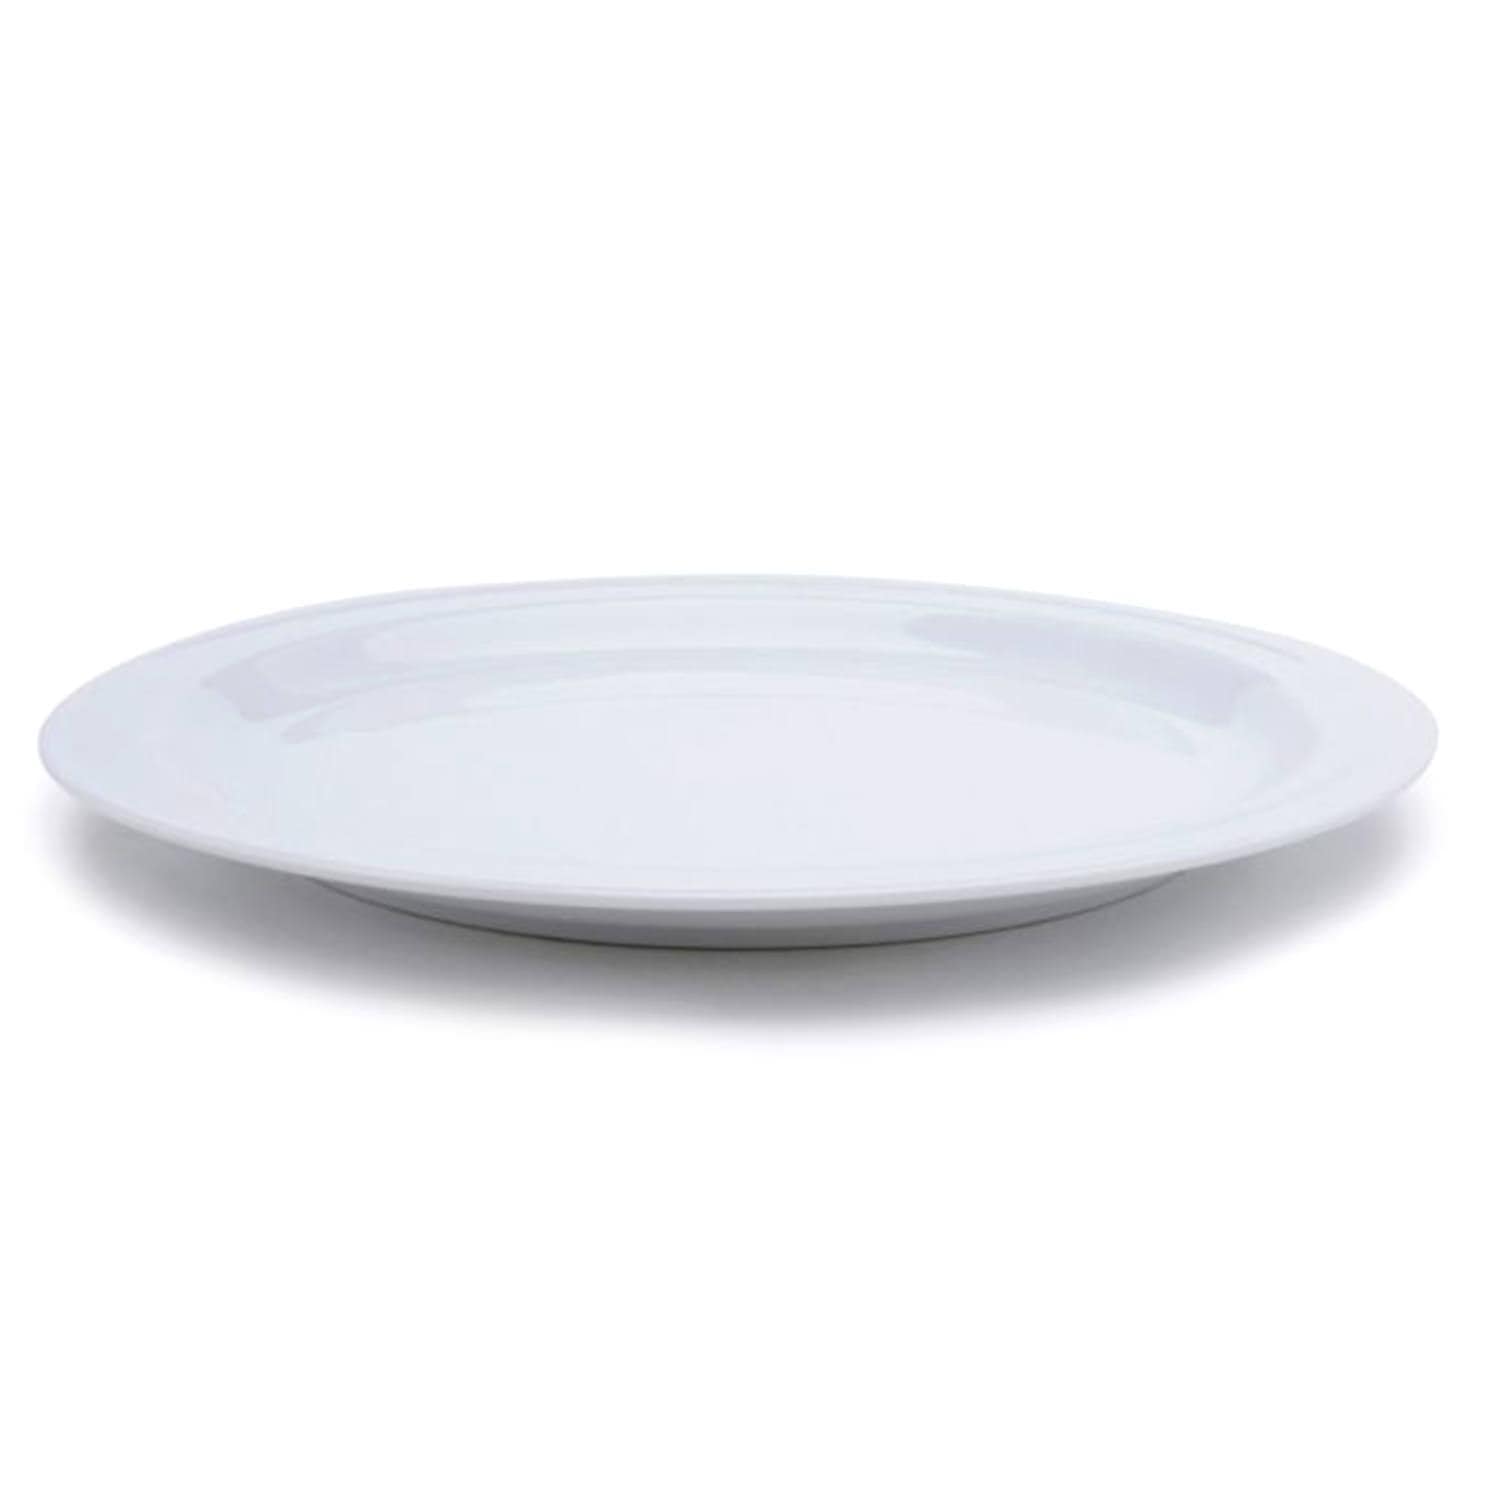 Dankotuwa Vessel Dinner Plate - White, 643 g - 4120 - Jashanmal Home